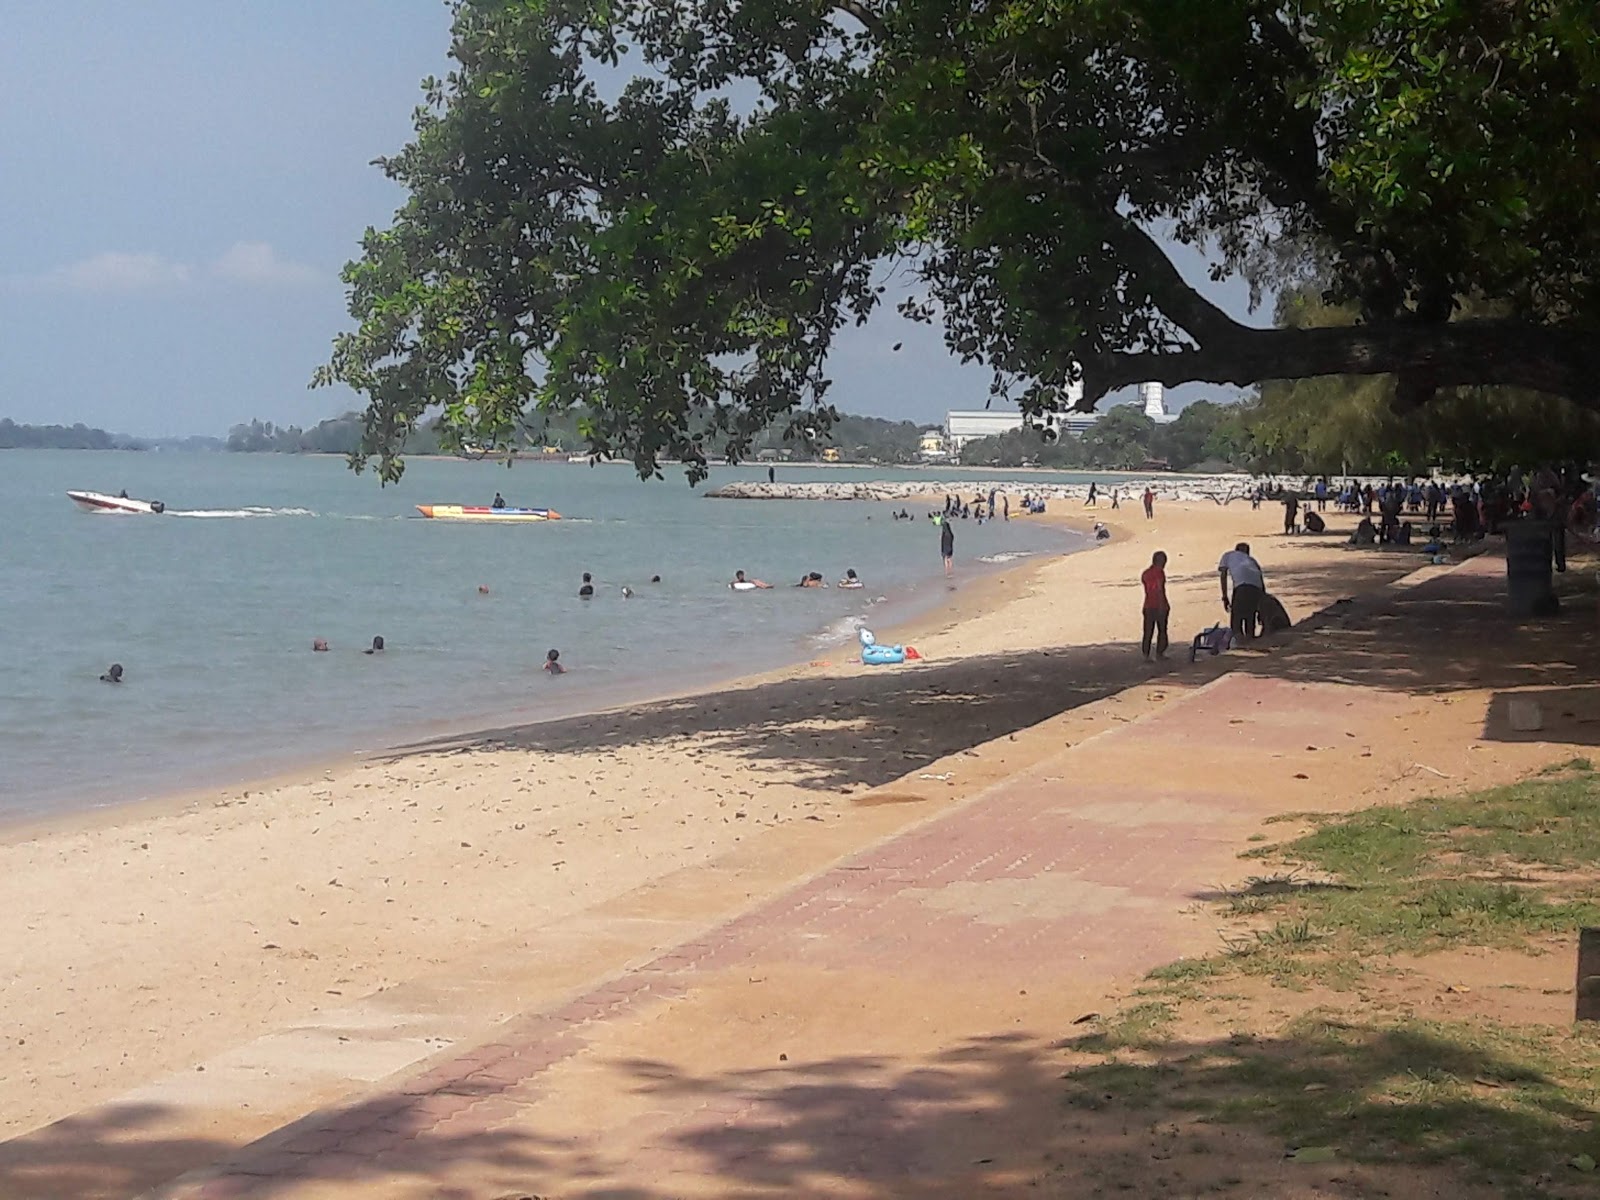 Zdjęcie Sg. Tuang Beach z przestronna plaża